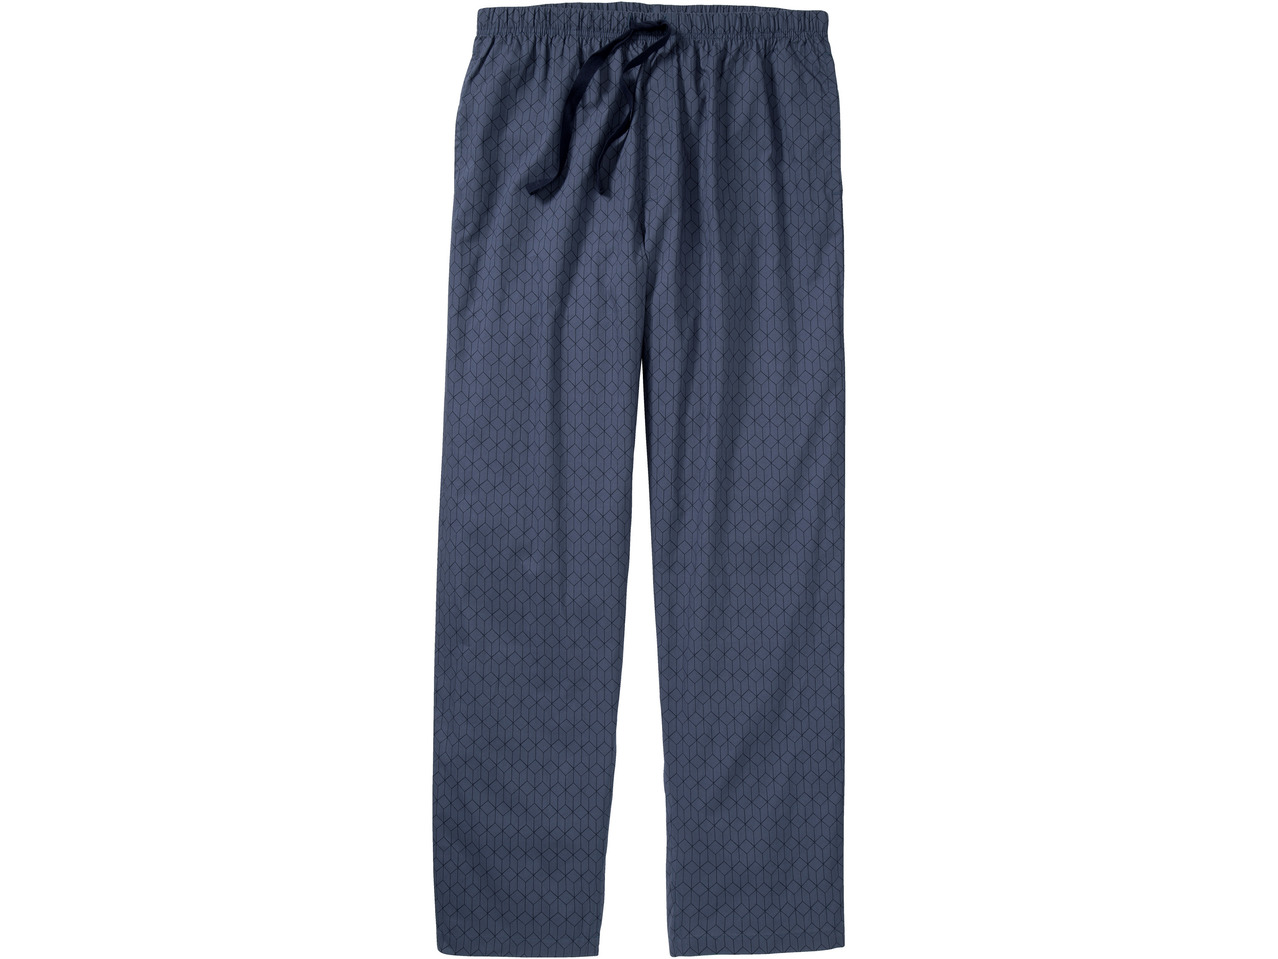 ESMARA LINGERIE(R)/ LIVERGY(R) Pyjamas